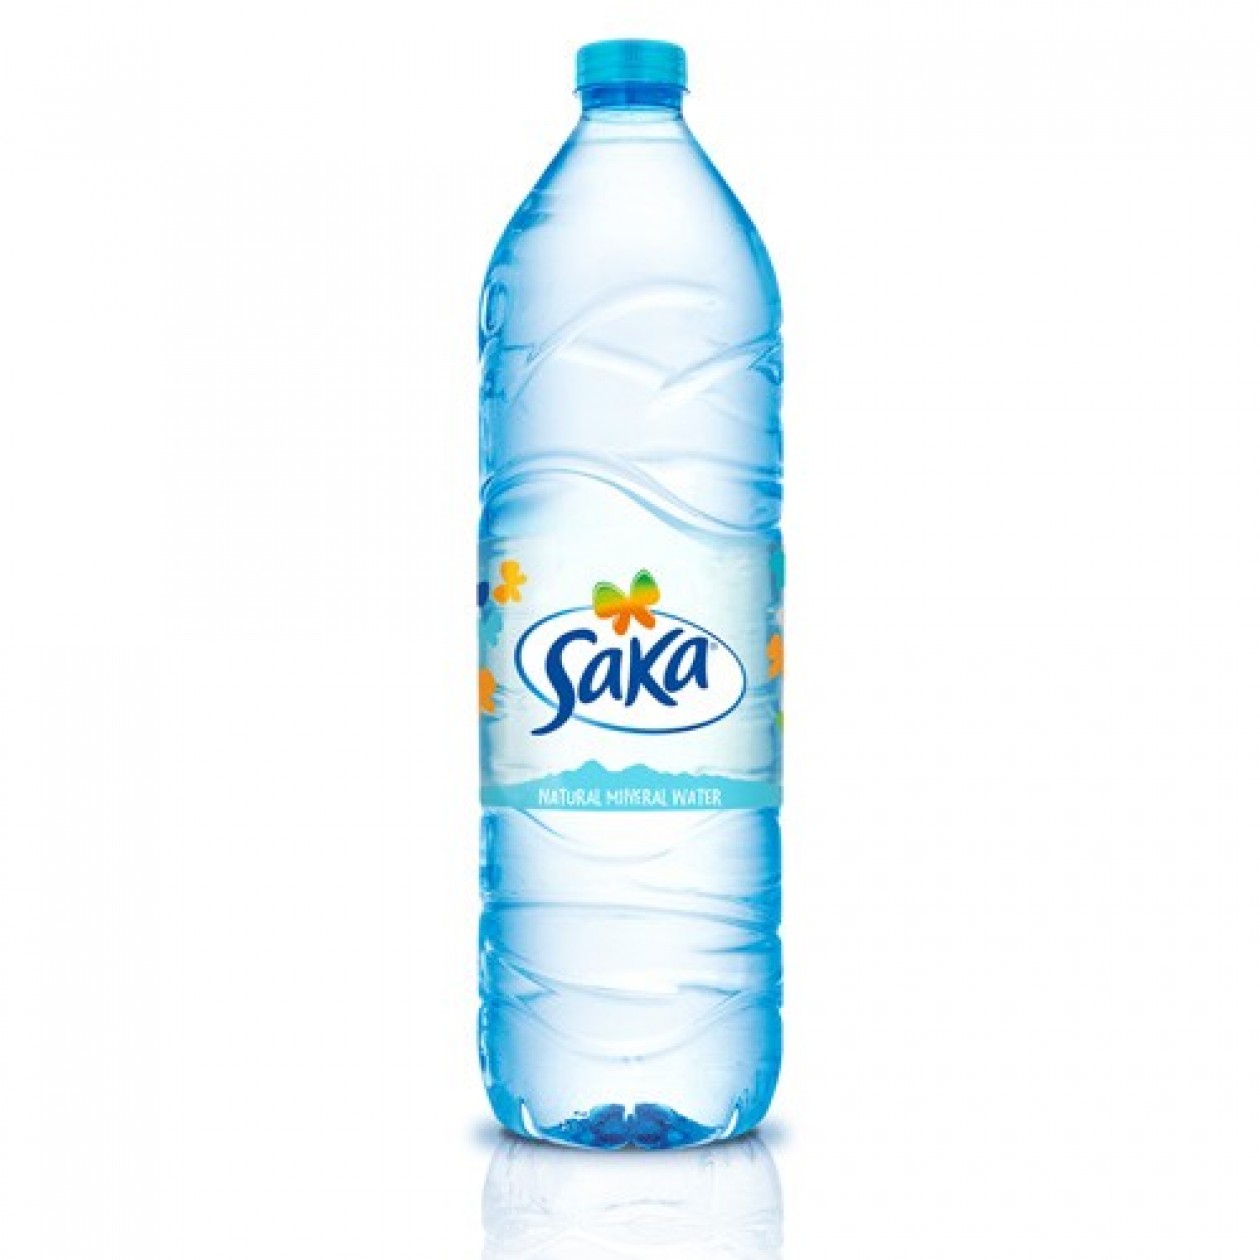 Saka Natural Mineral Water 500ml